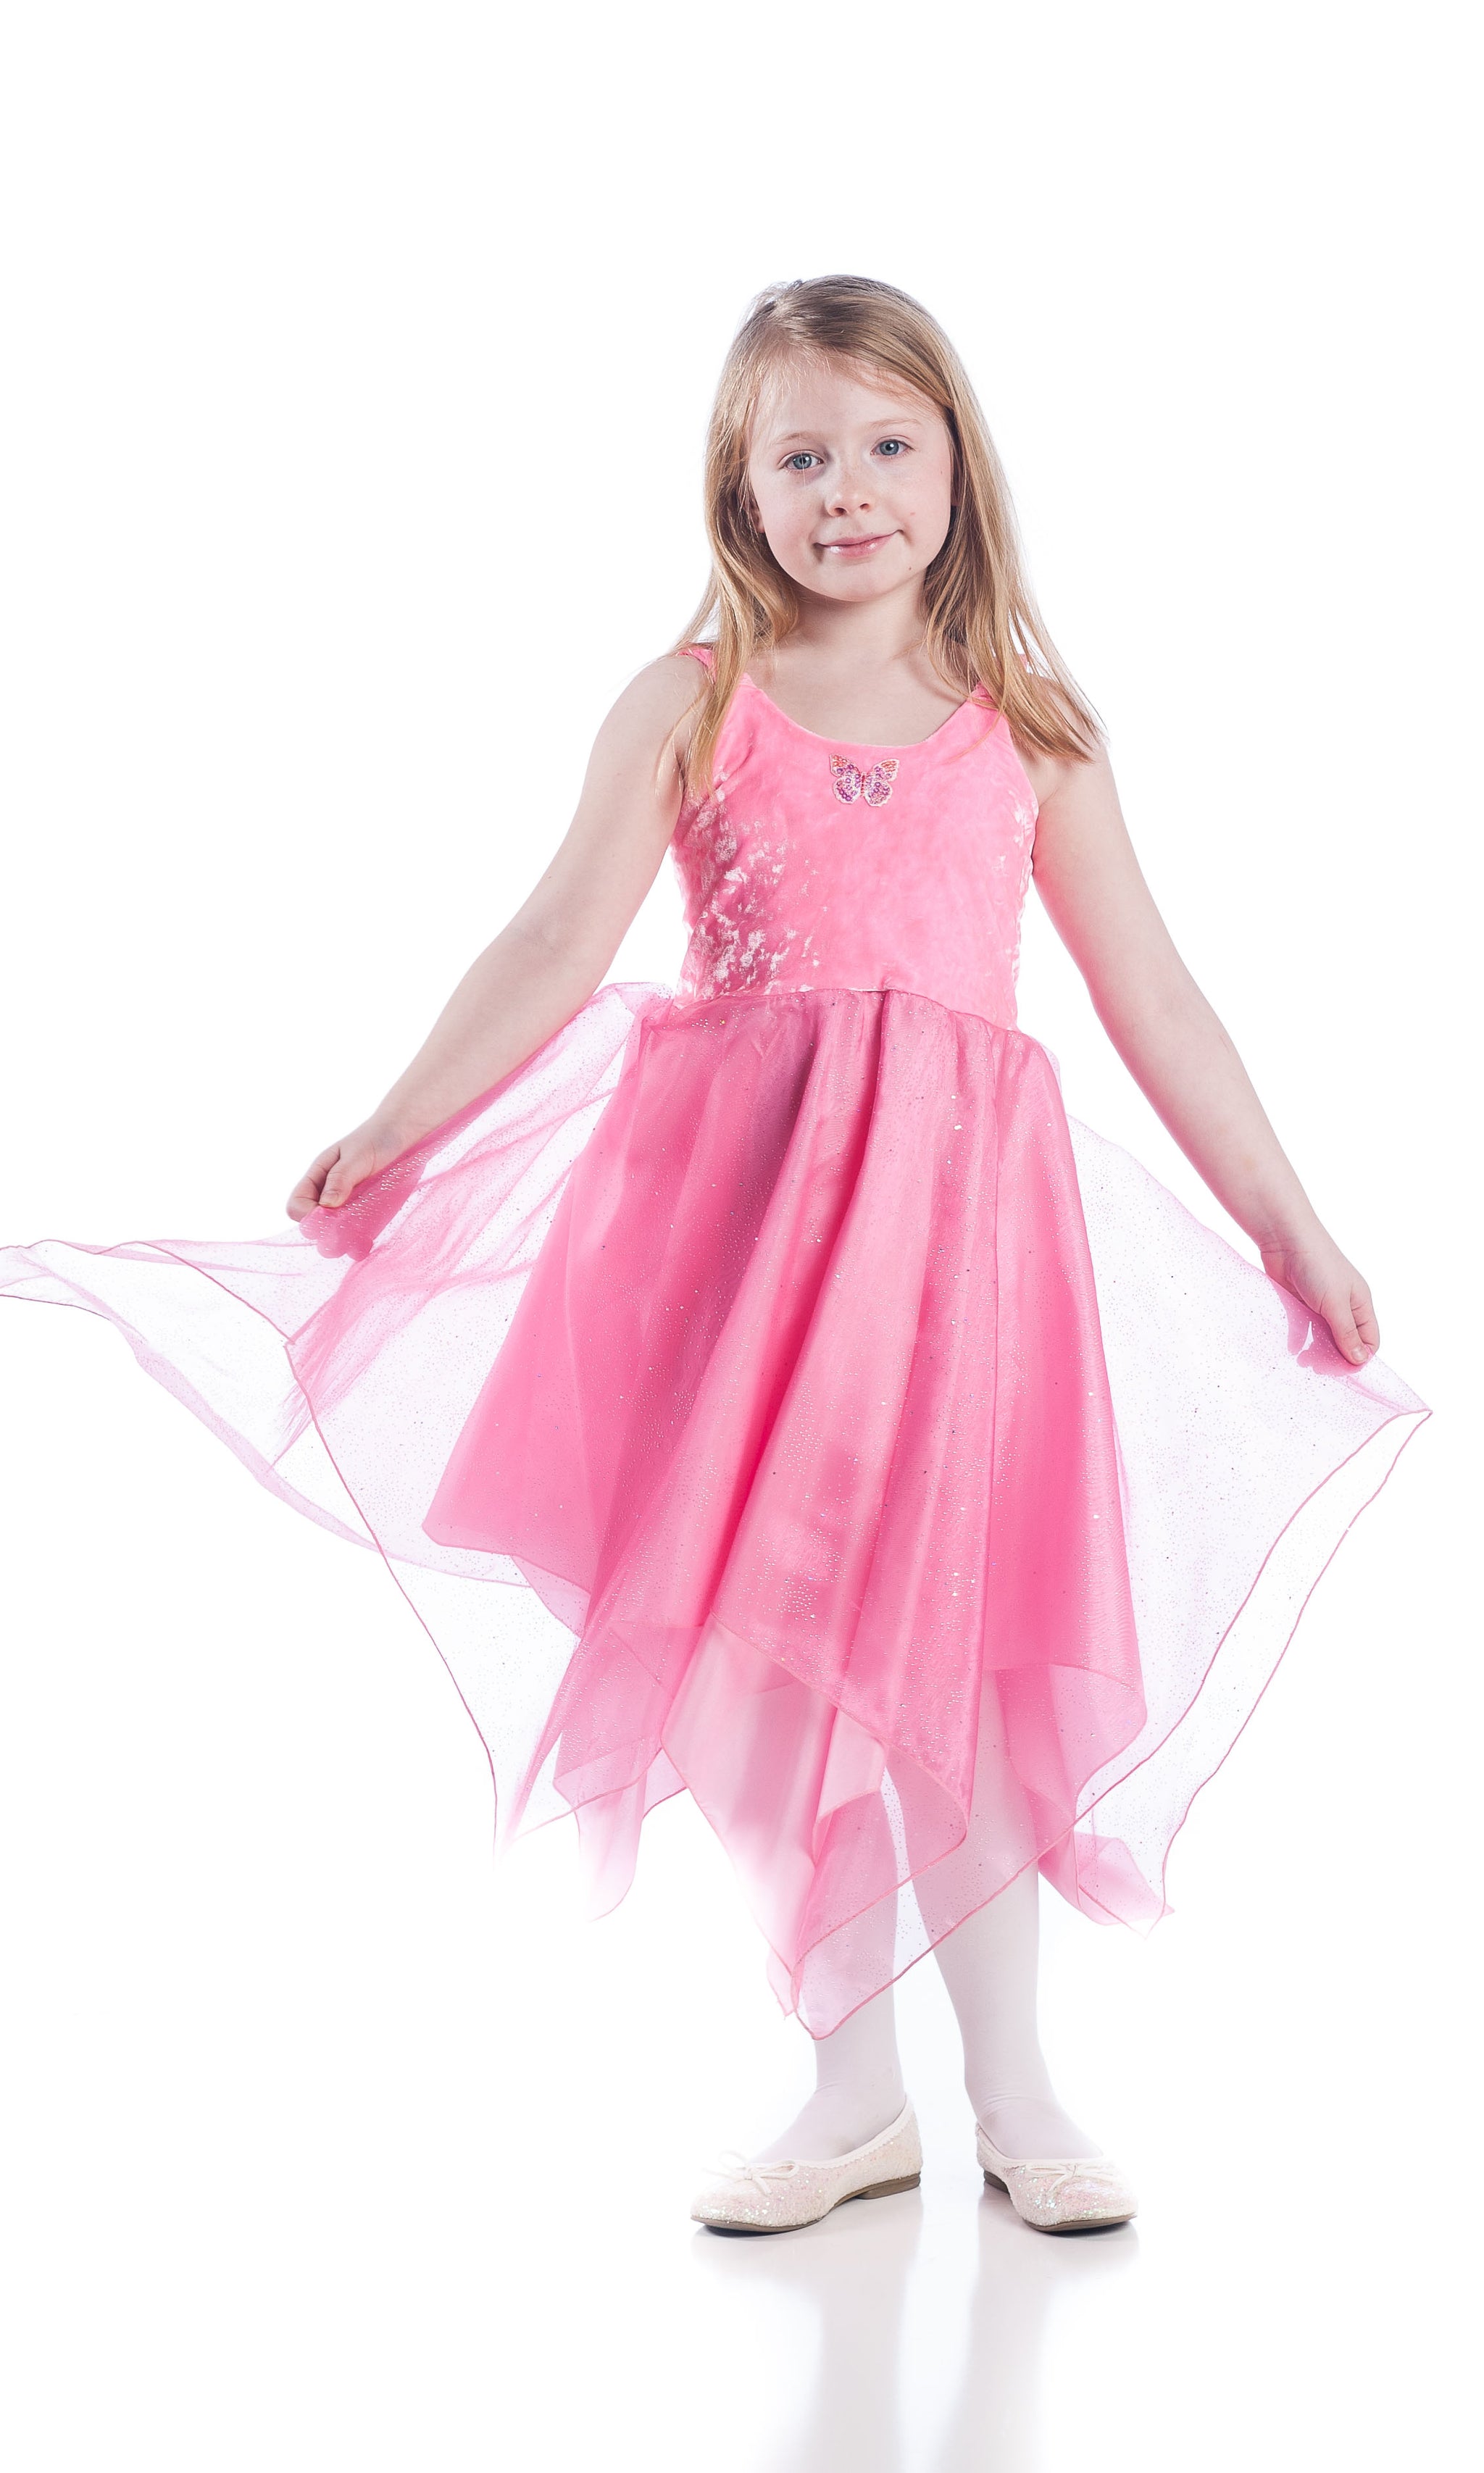 Flower Fairy Dress Up Kit for Girls – Dreamland Fairy